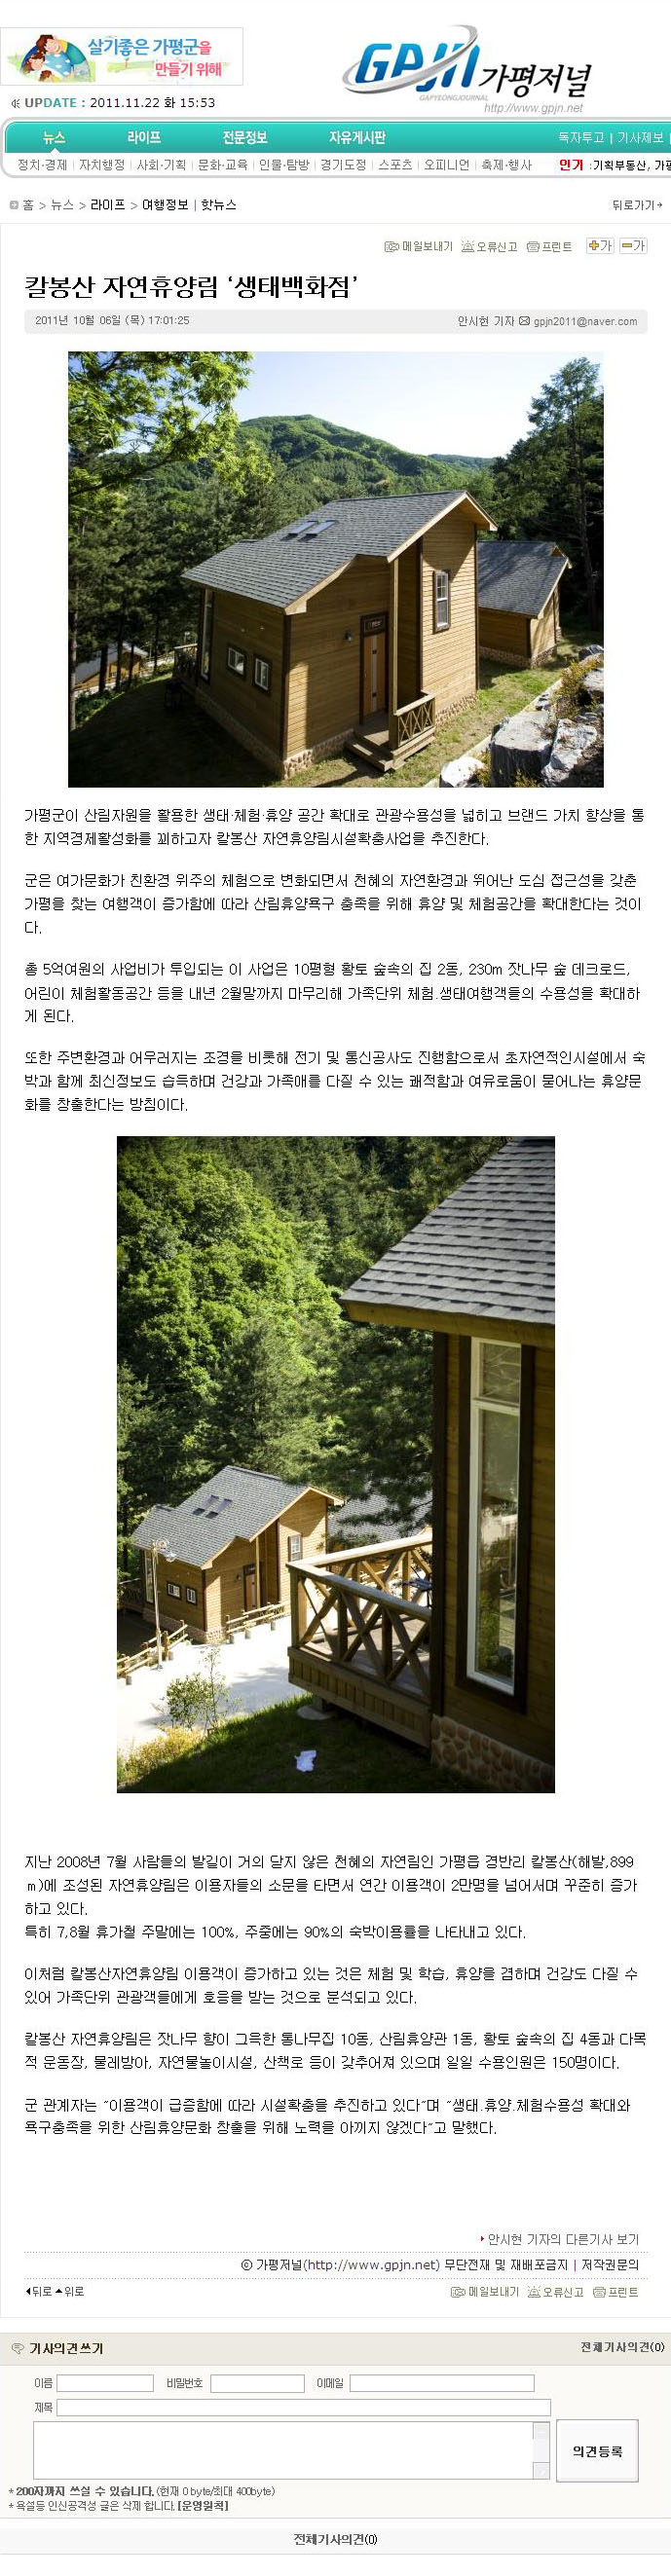 칼봉산 자연휴양림 생태백화점(가평저널.jpg